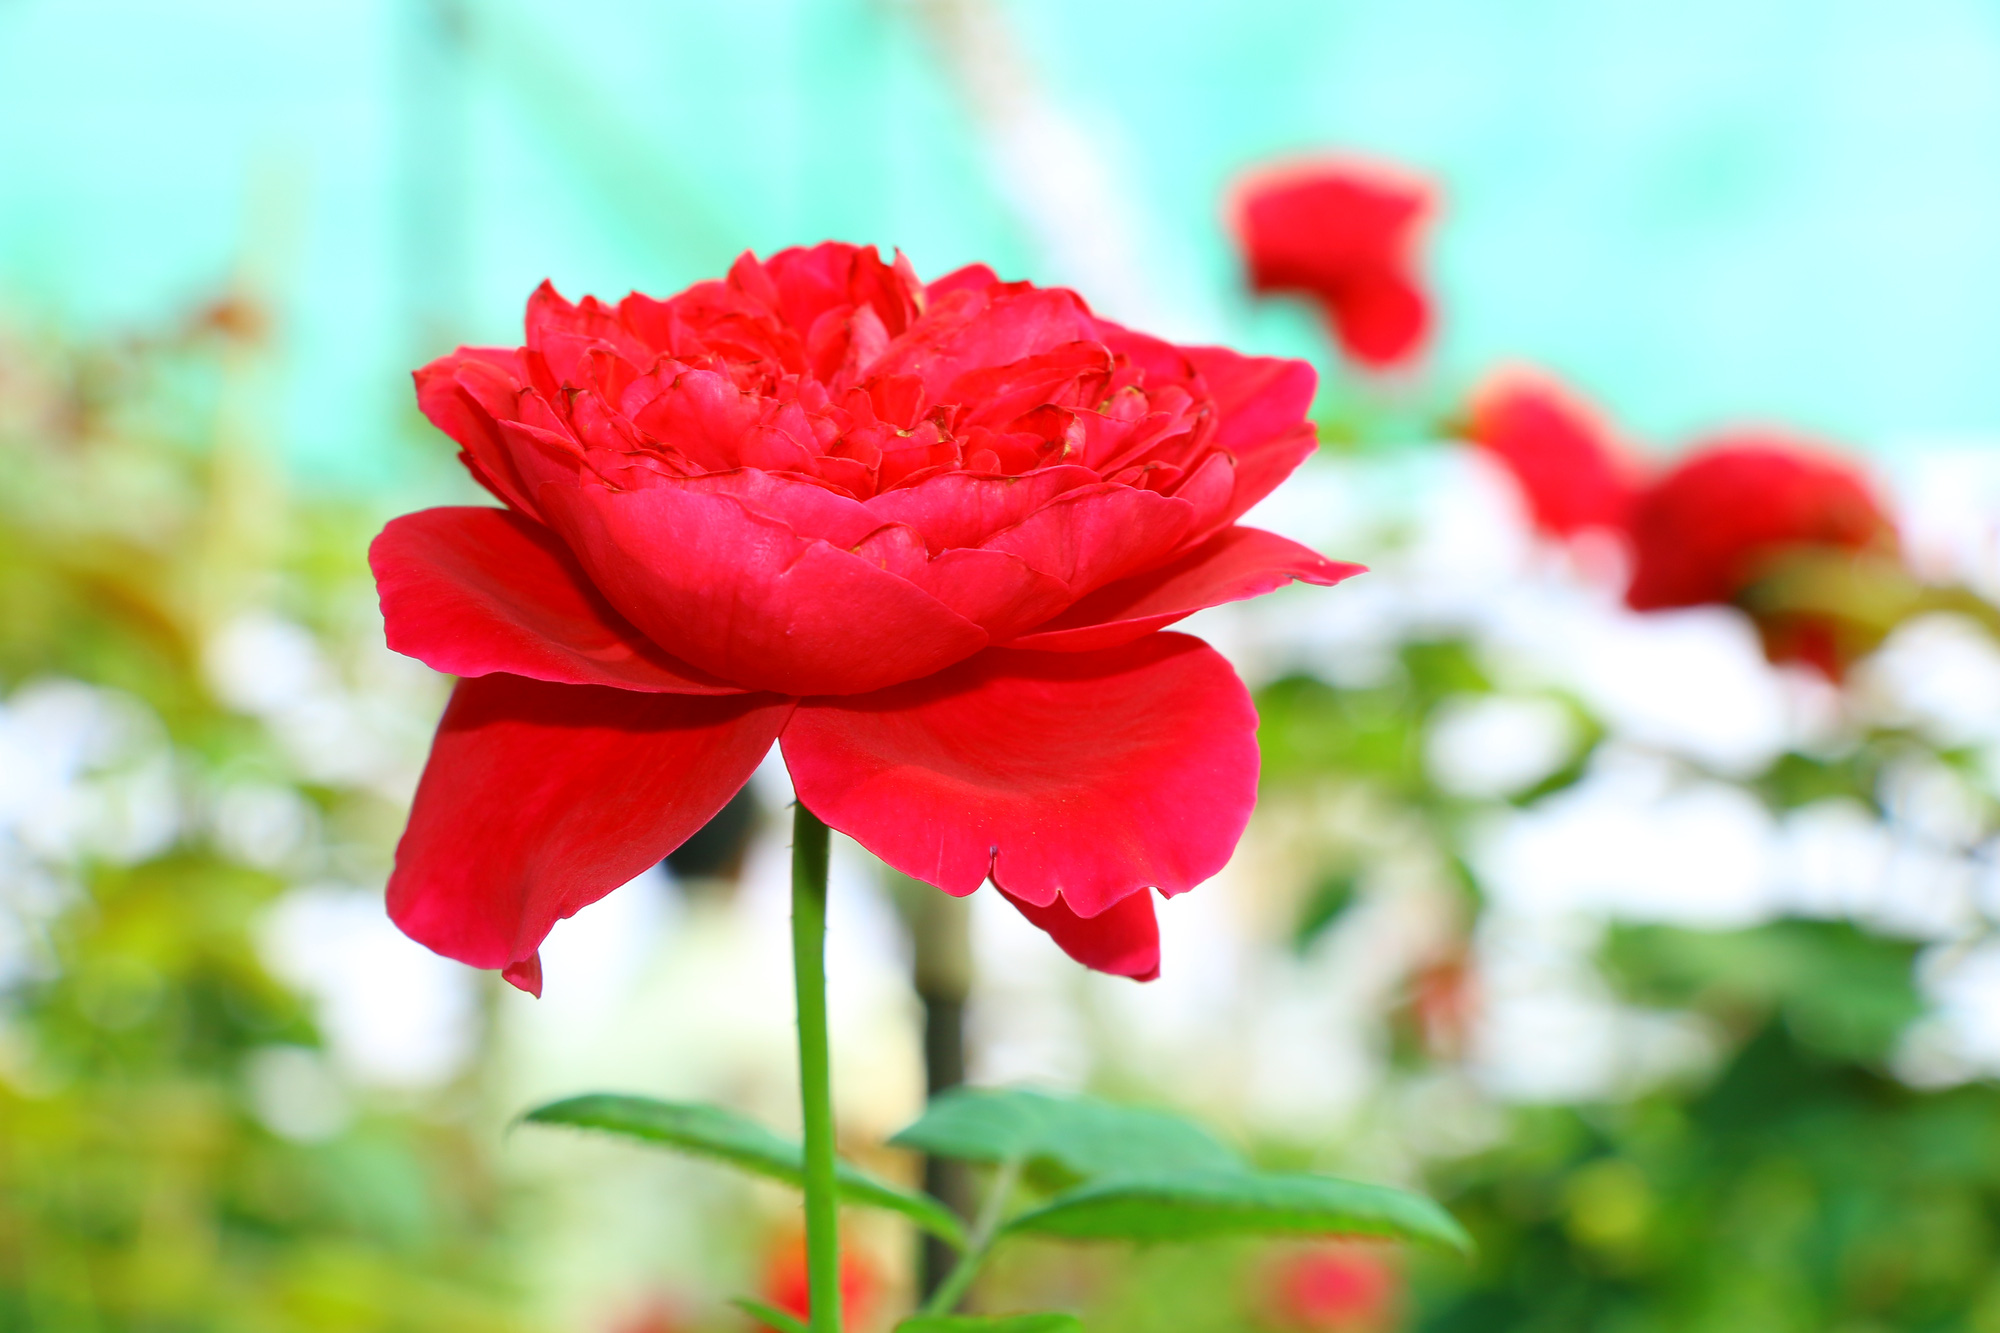 Làm thế nào để tạo ra một khu vườn hoa hồng đẹp mắt và thu hút sự chú ý của người đi qua?